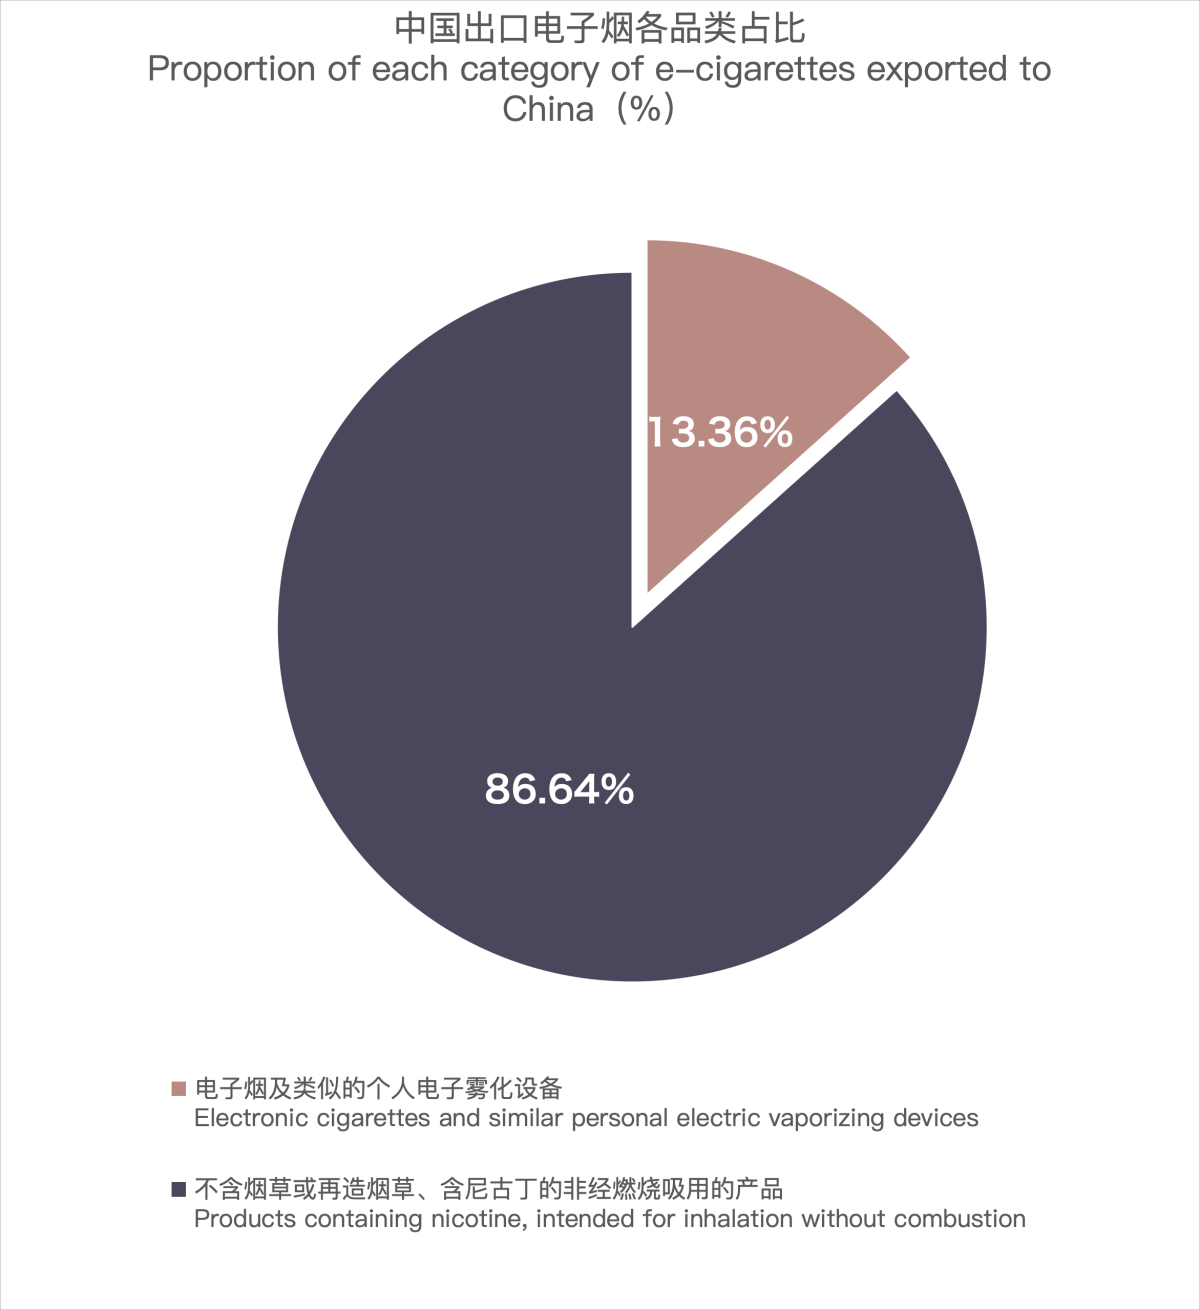 2月中国出口新西兰电子烟约764万美元 环比减少18.87 %